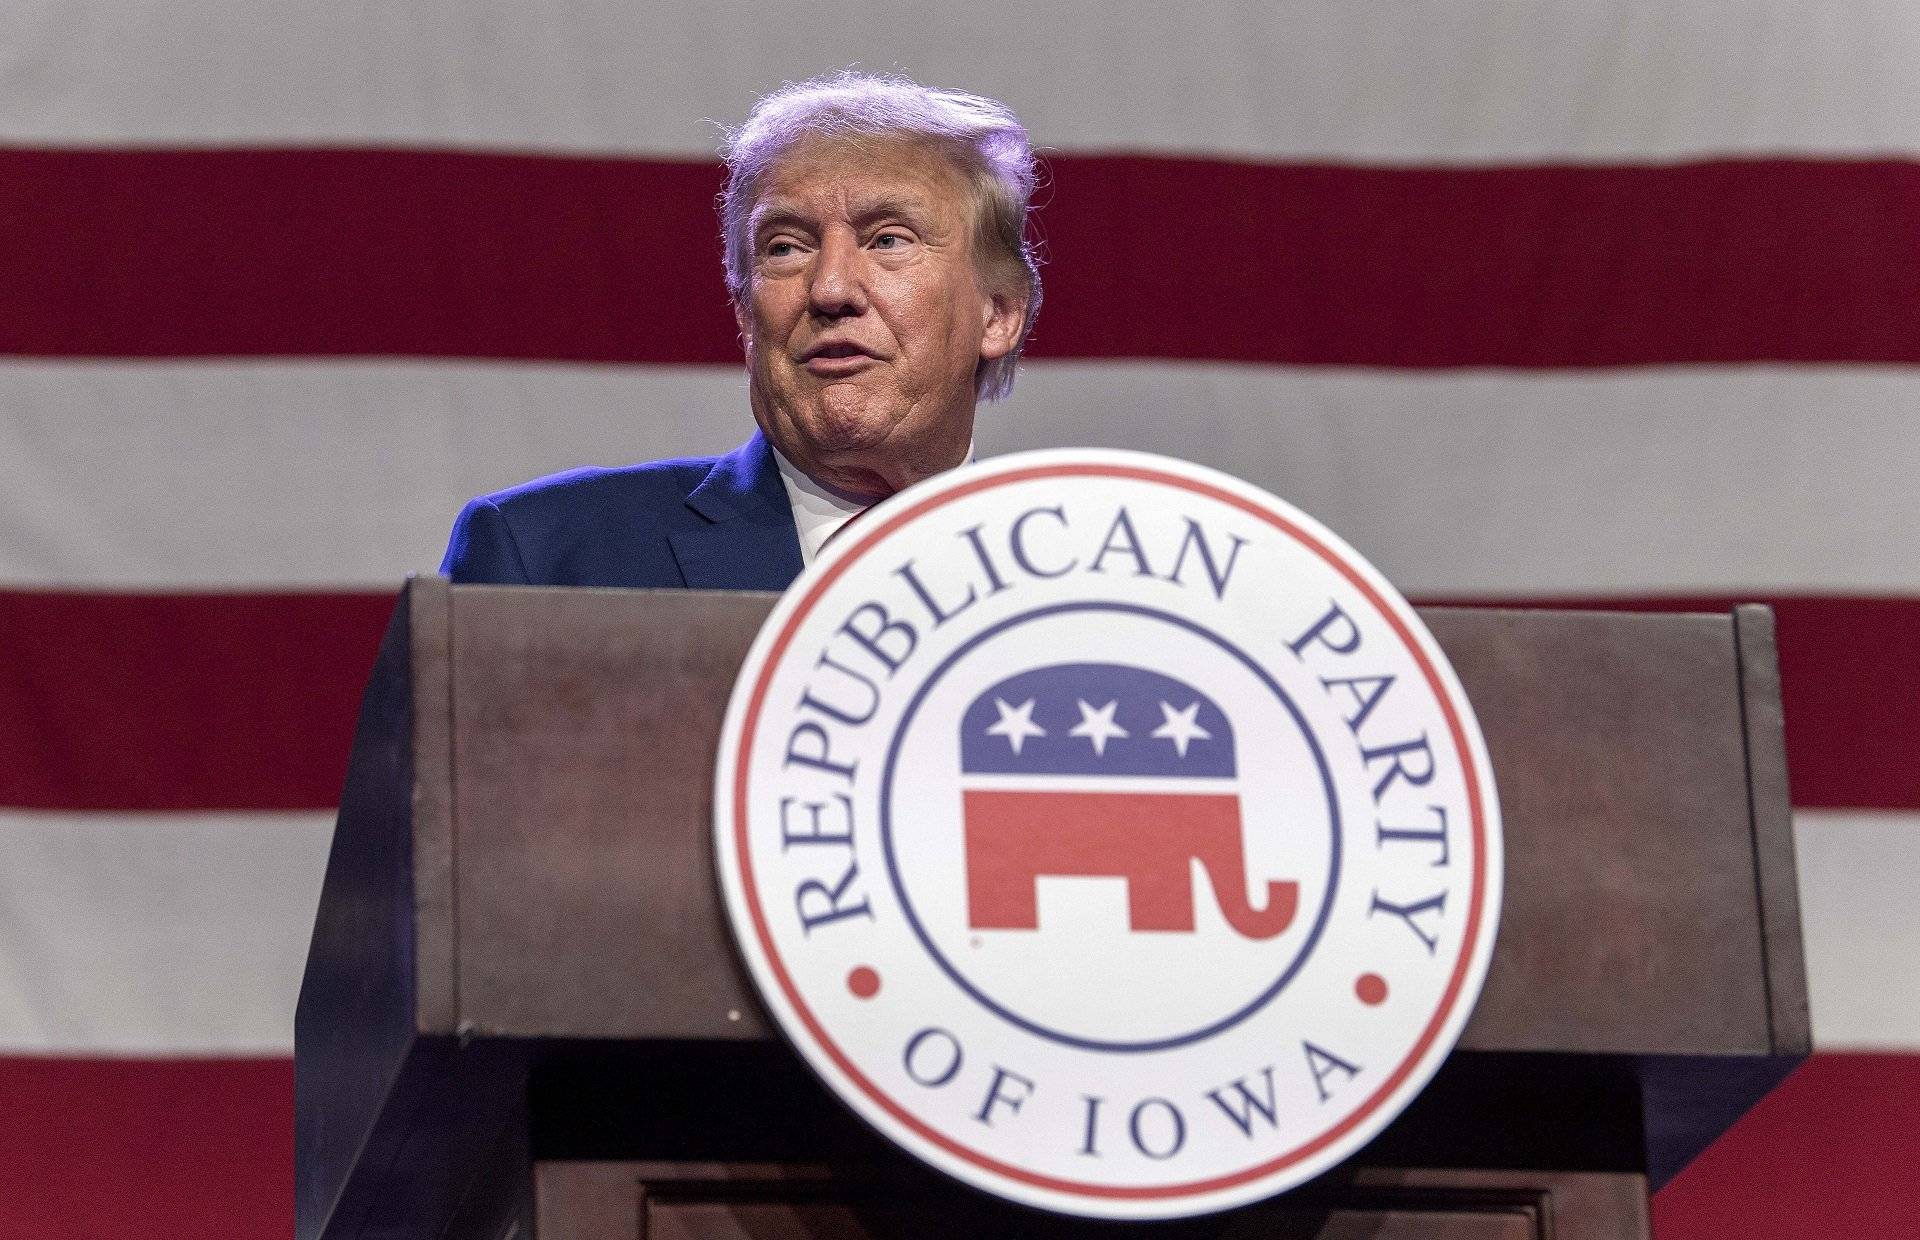 Els republicans arrenquen els debats a la presidència amb l'absència de Donald Trump